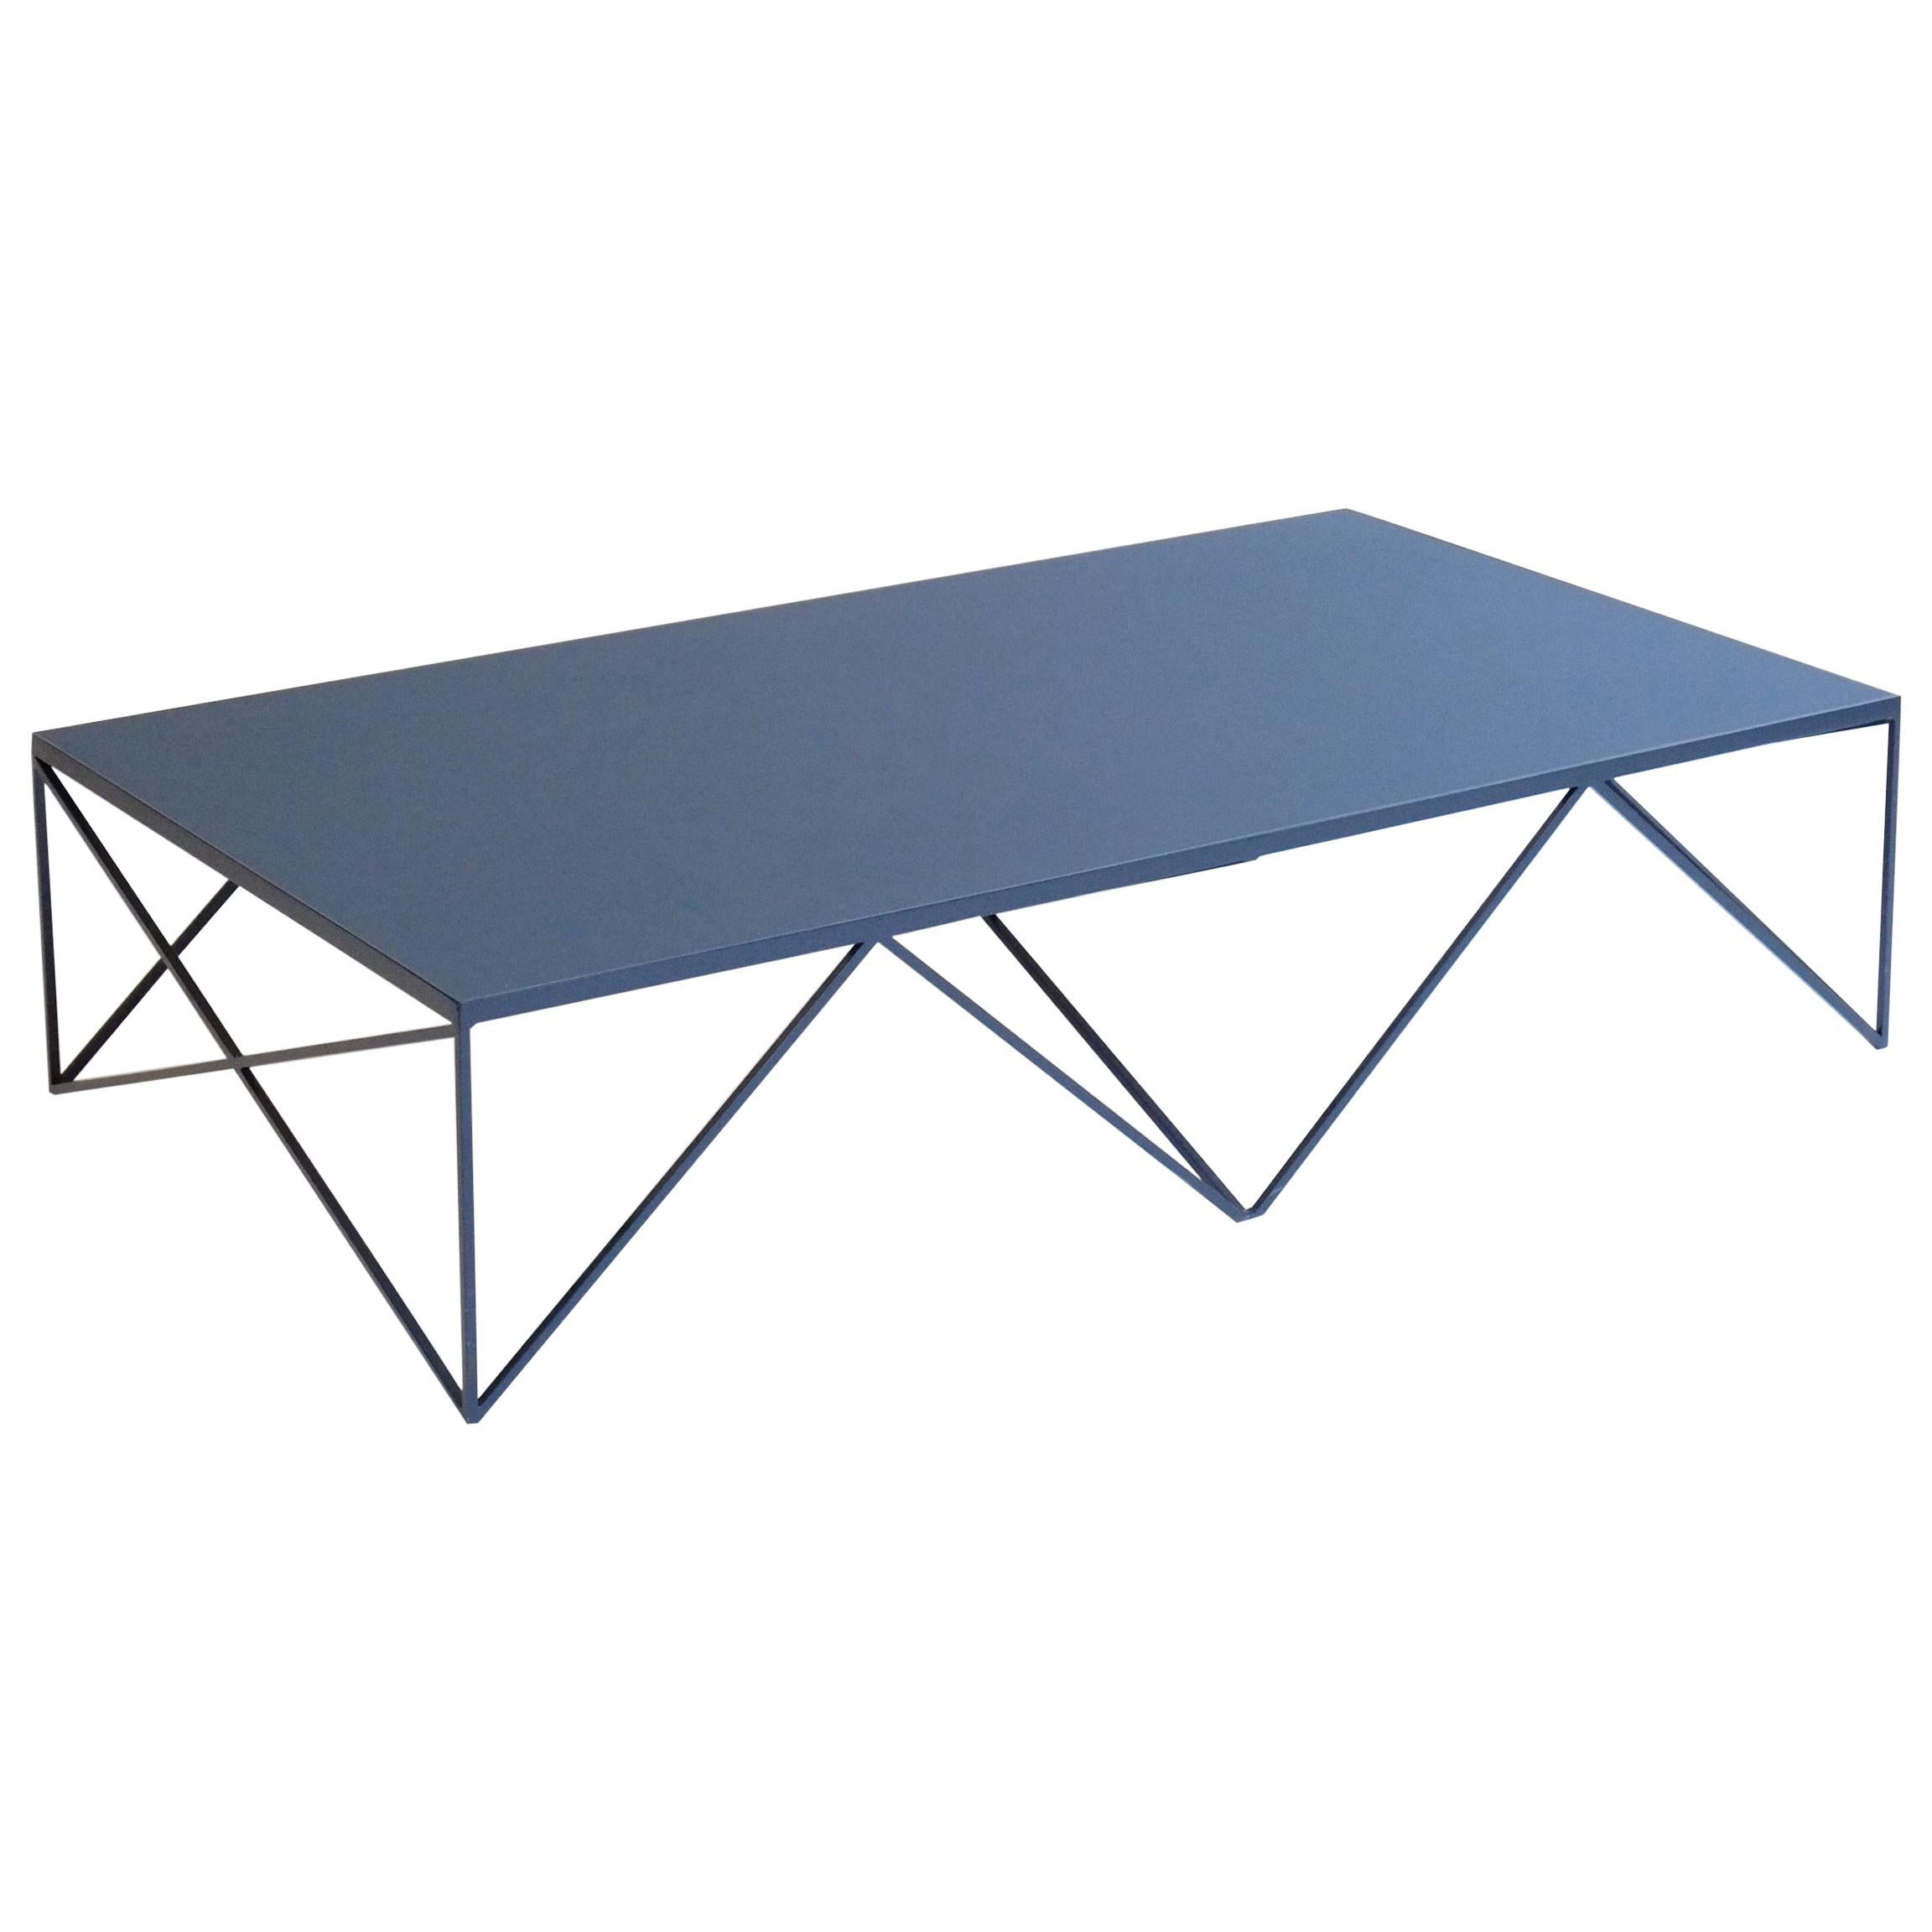 Grande table basse moderne avec plateau en linoléum naturel bleu personnalisable